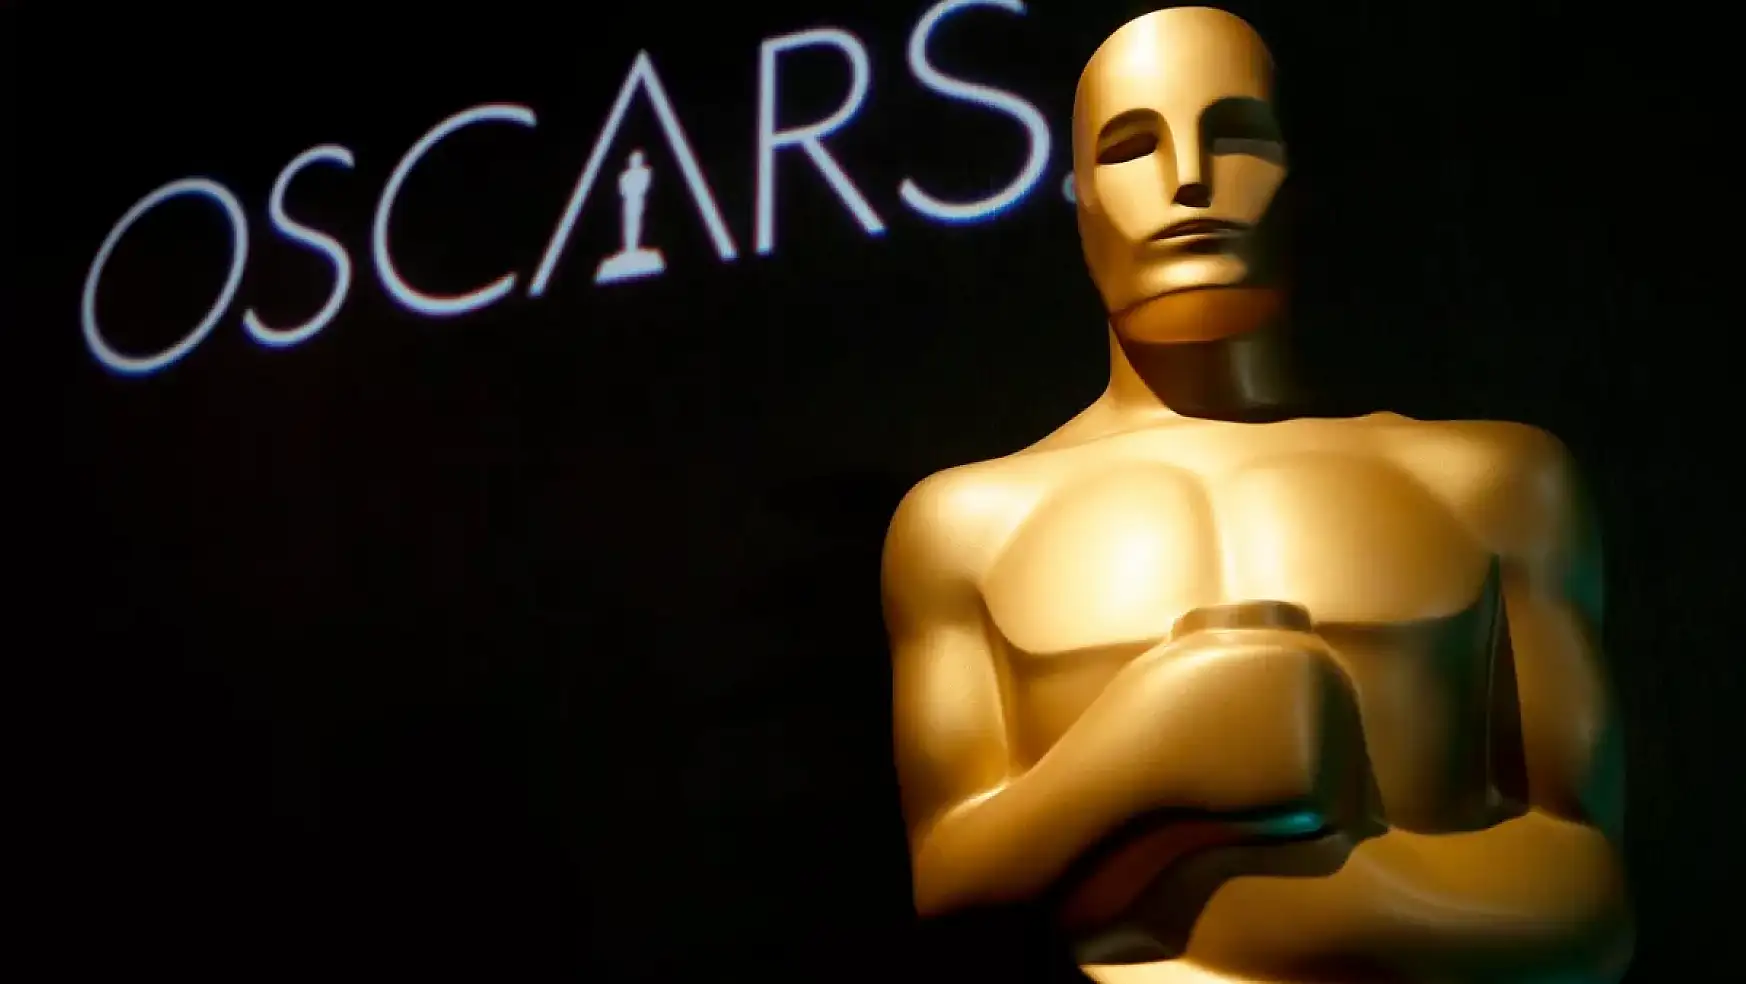 96.Oscar Ödüllerinde Hangi Filmler ve Oyuncular  Ödül Aldı?